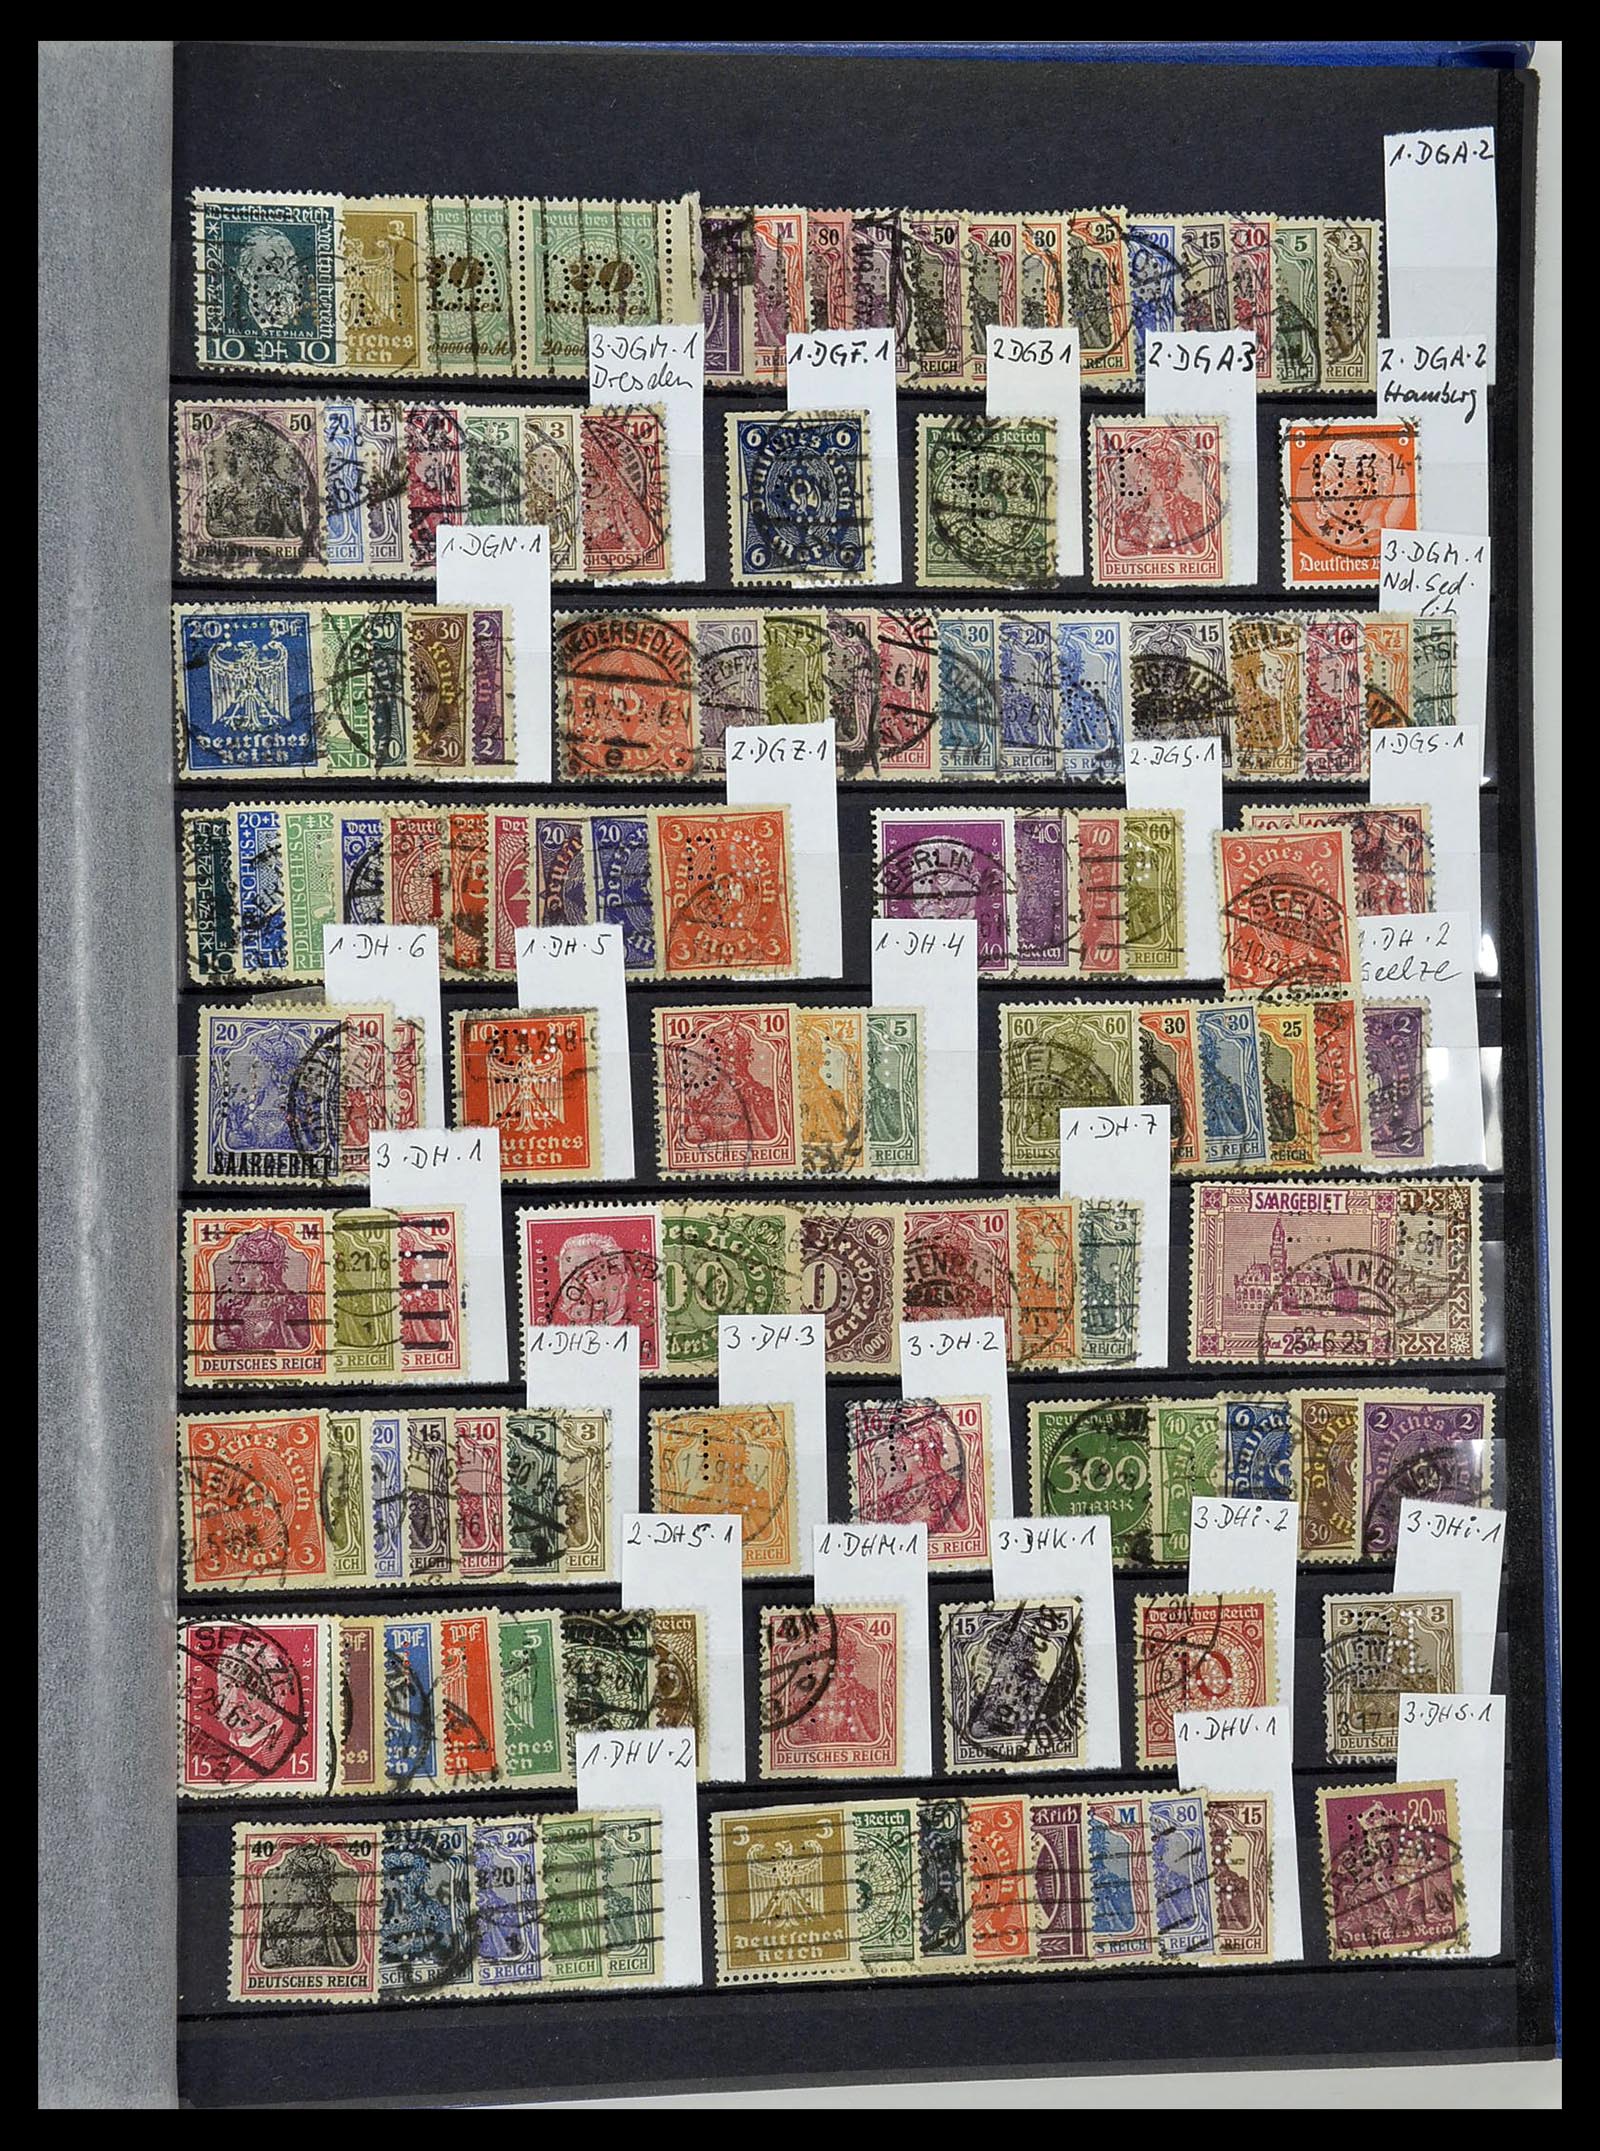 34432 098 - Stamp Collection 34432 German Reich perfins 1900-1933.